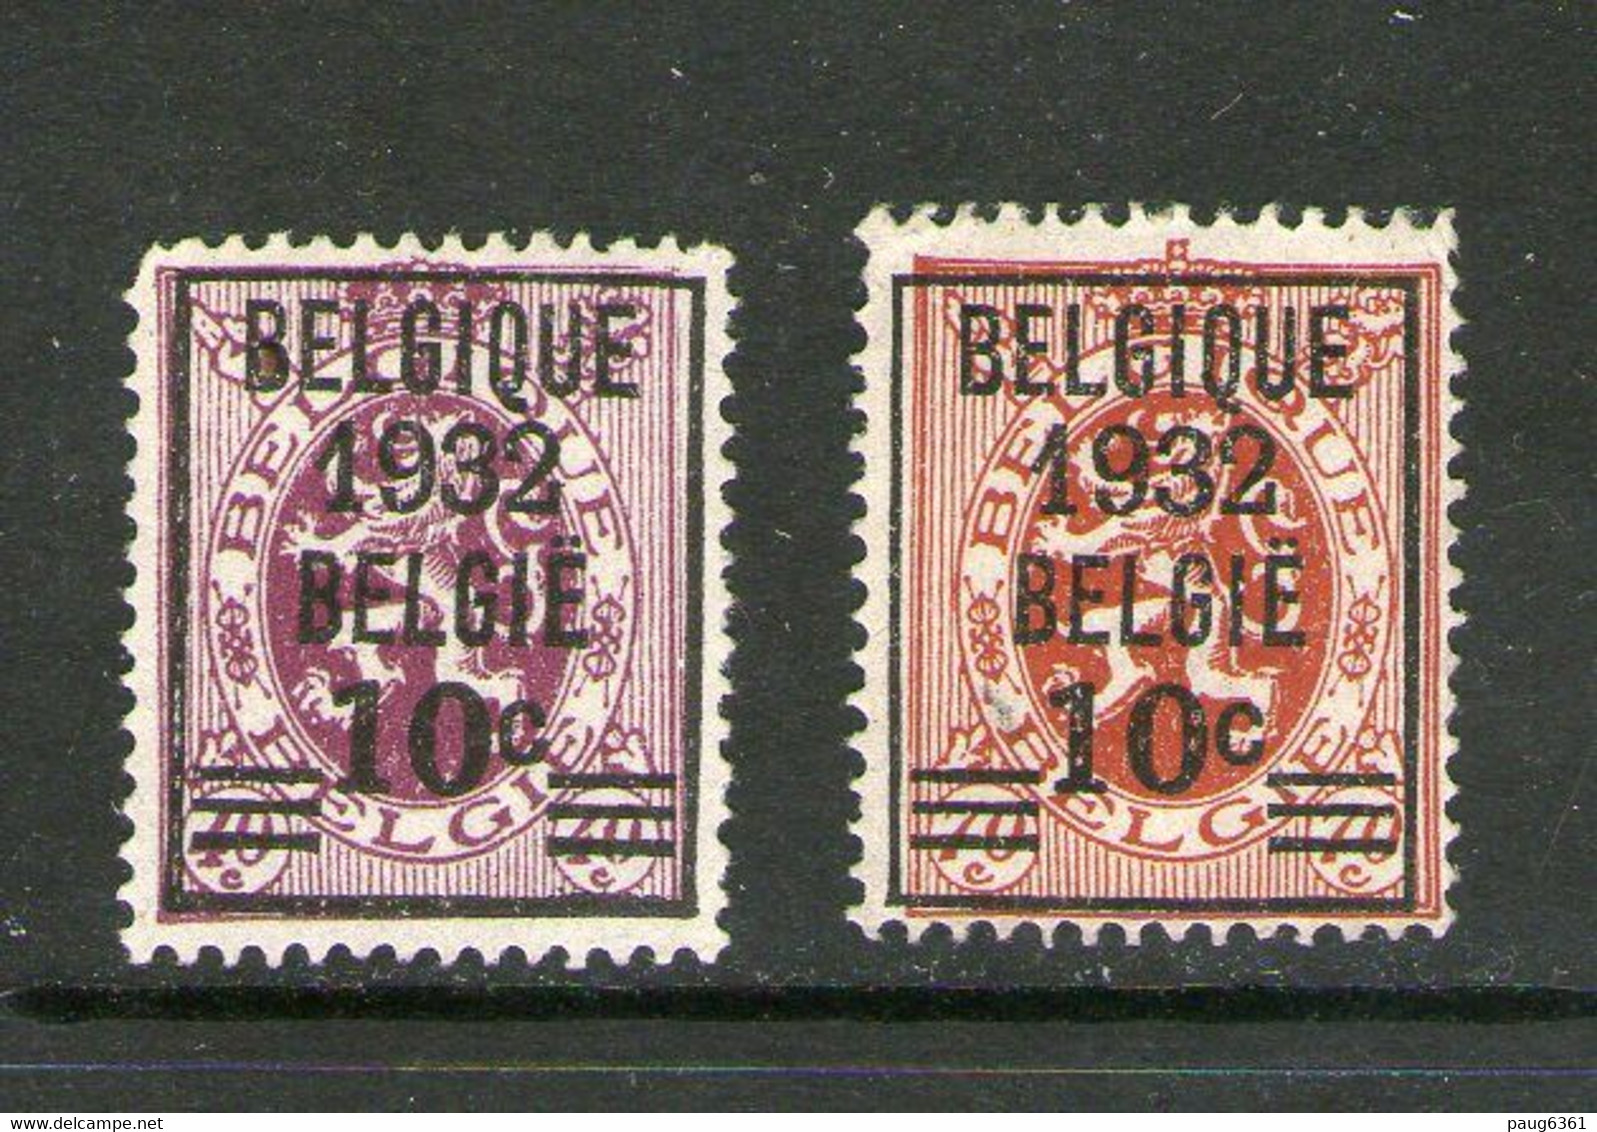 BELGIQUE 1932 YVERT N°333/34 NEUF MH* - Typos 1929-37 (Heraldischer Löwe)